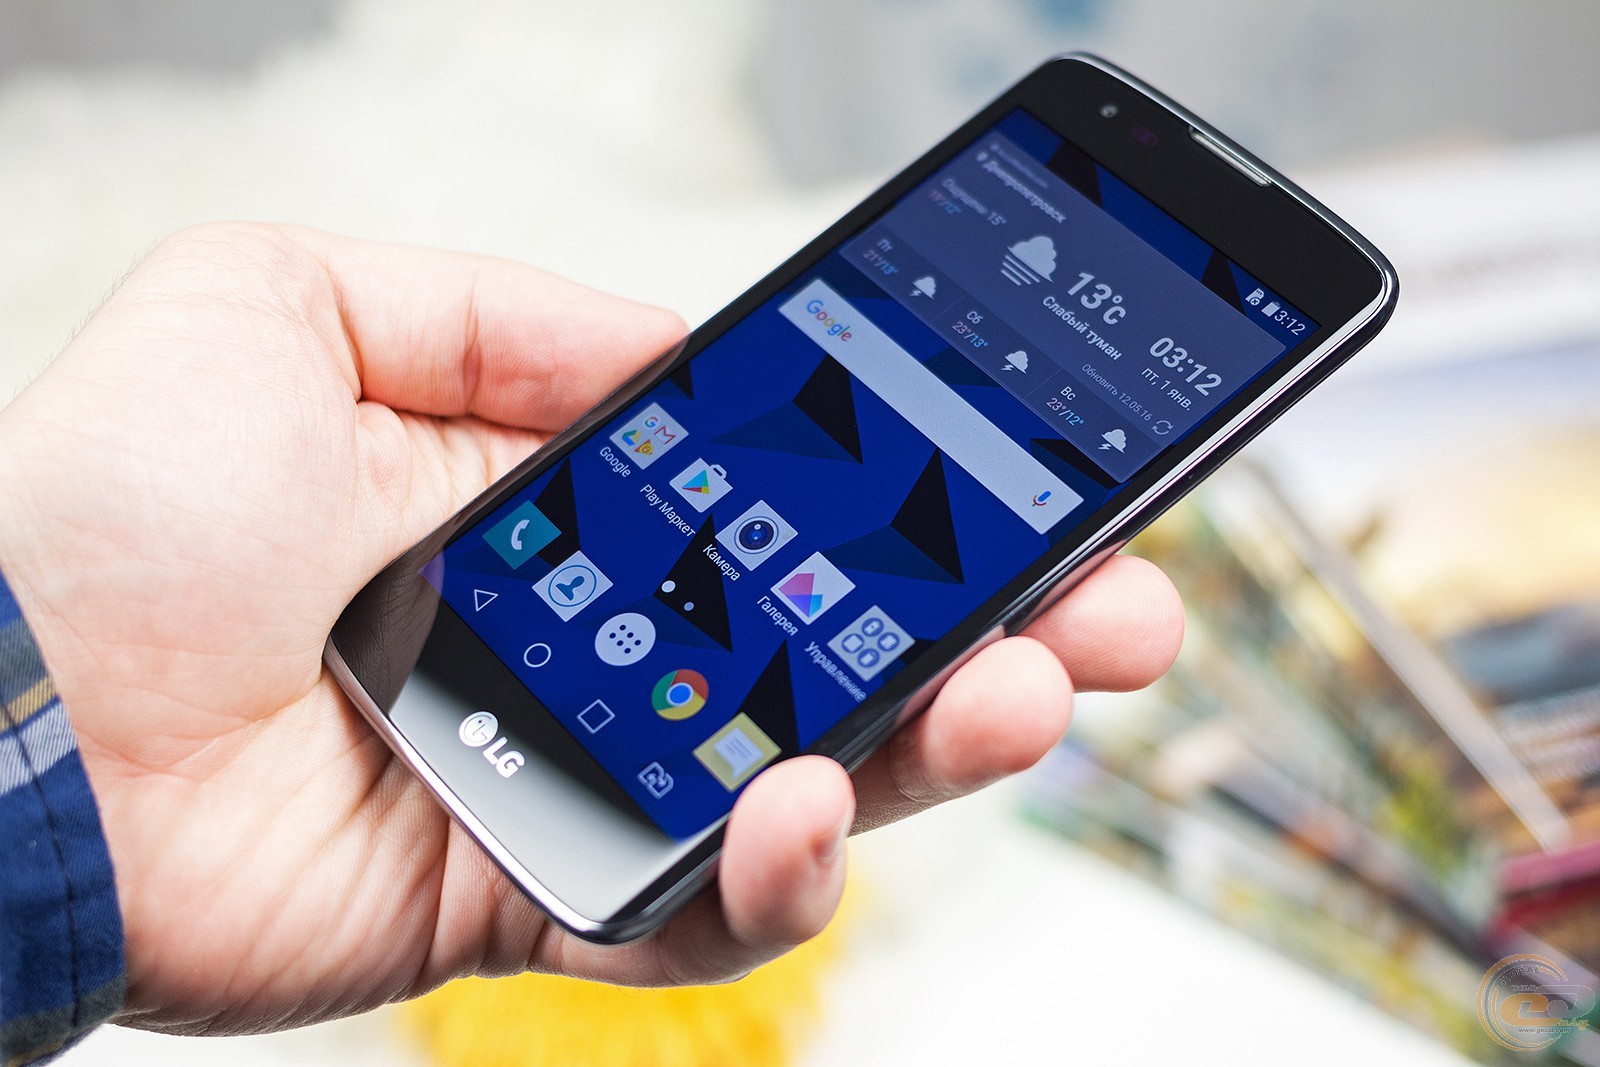 Компания LG объявила цену на смартфон K8 в РФ